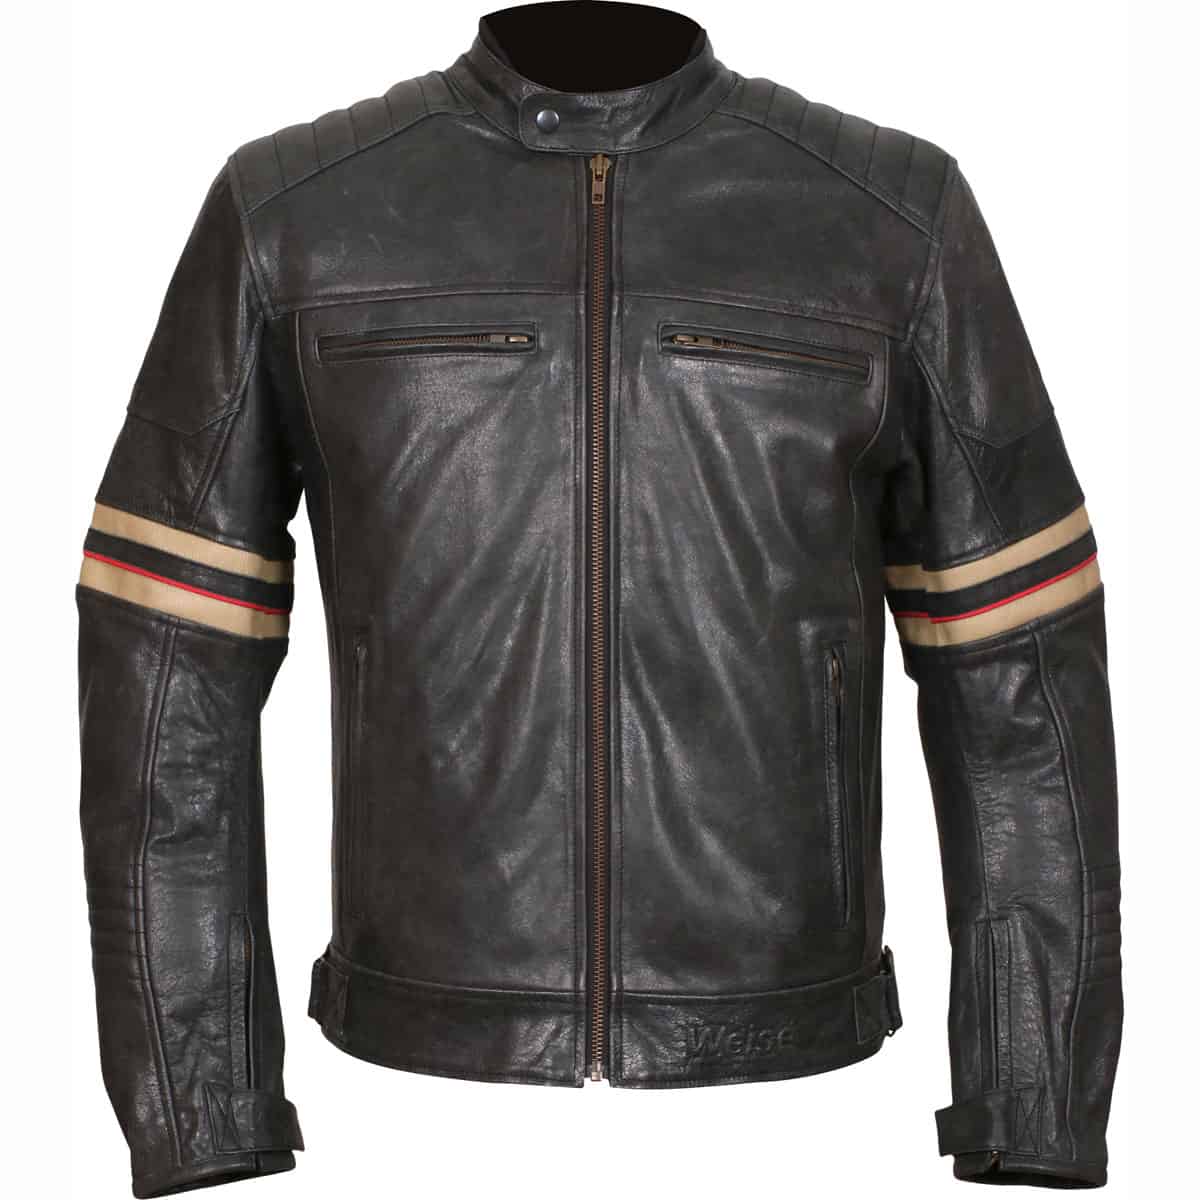 Leather Motorcycle Jackets | Motorbike Leather Jackets – GetGeared.co.uk